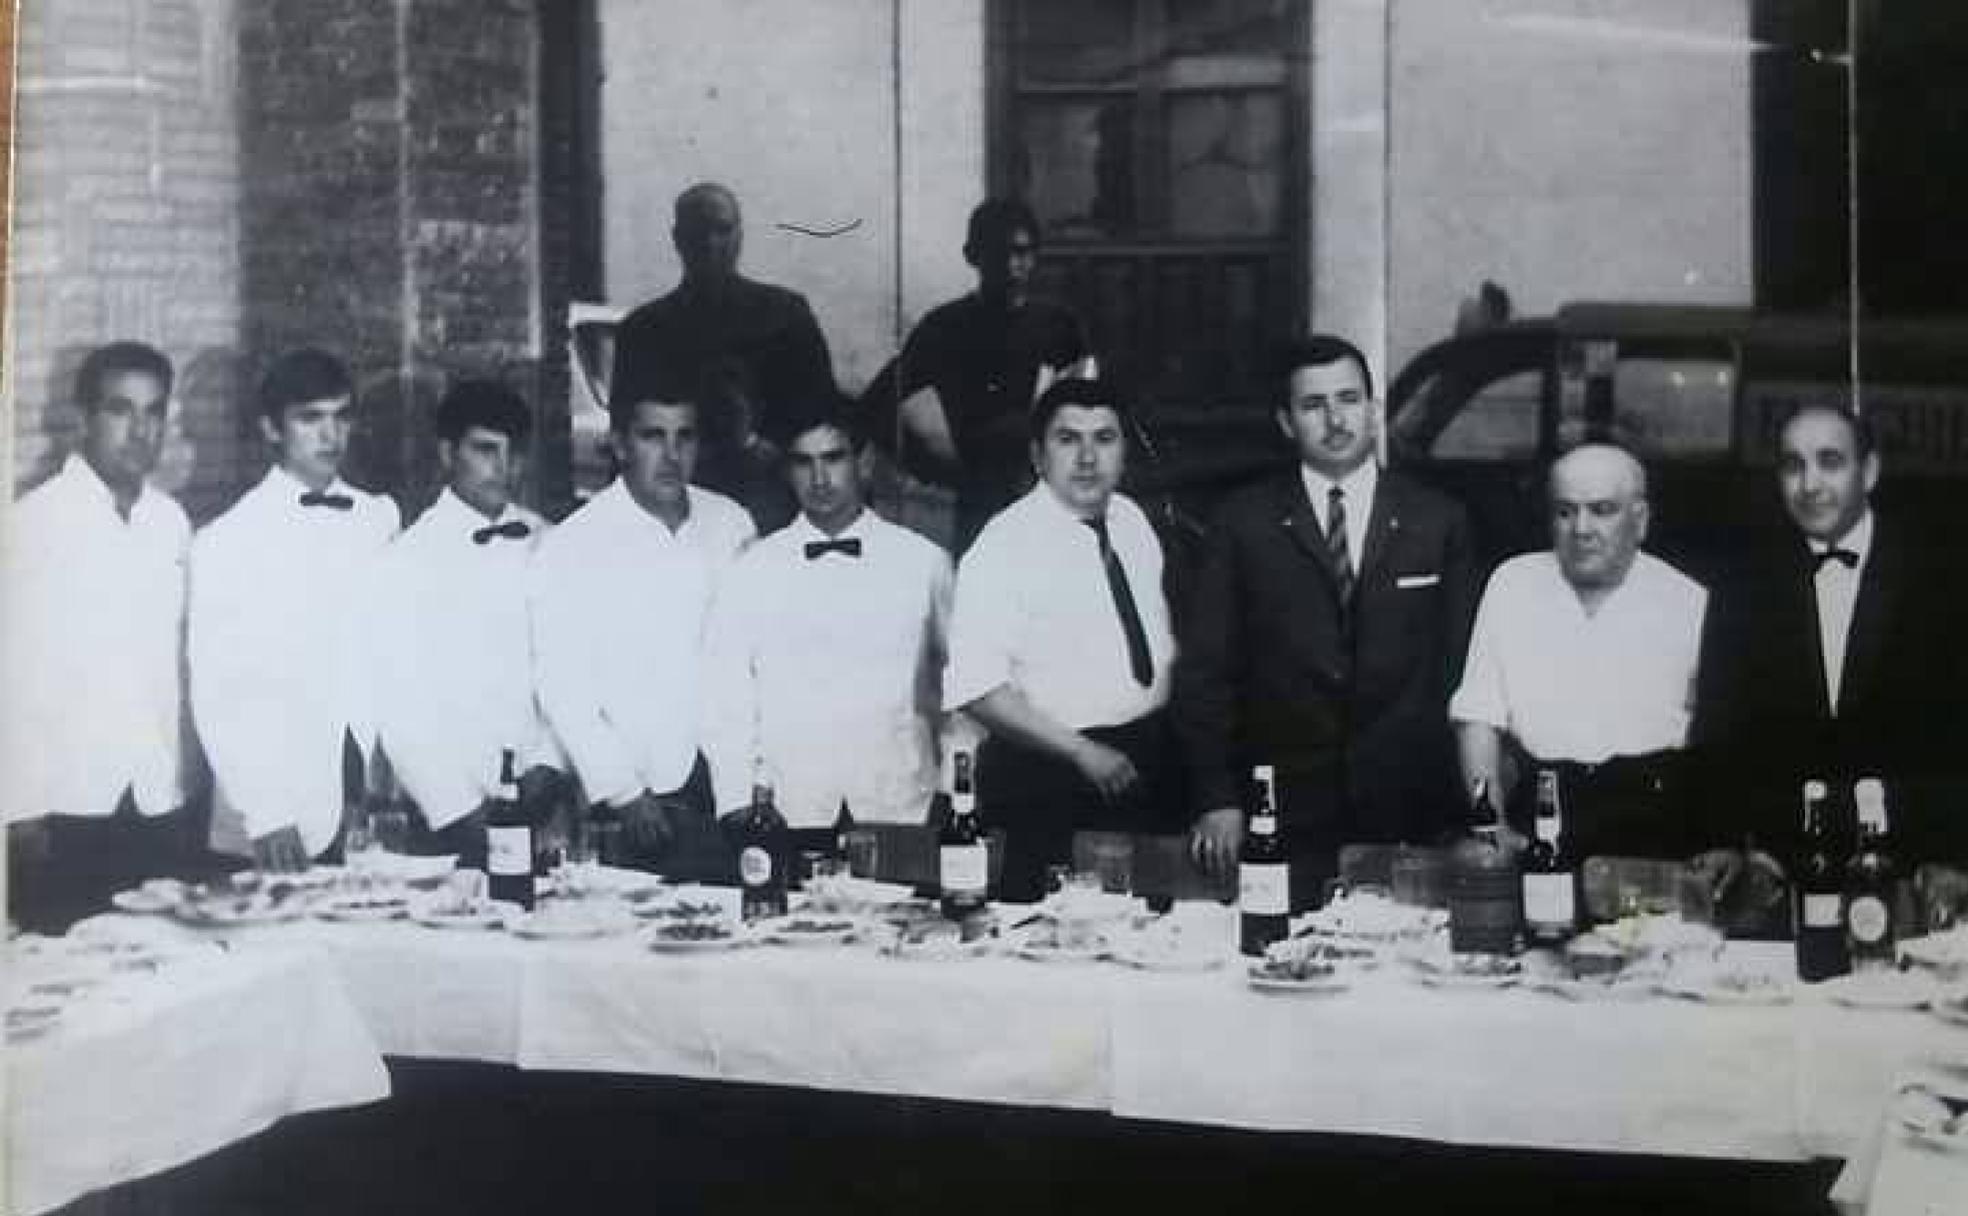 Plantilla inicial de El Pato con su fundador, Emilio Rey Holguín, con camisa blanca y corbata, y el padre de éste, Lorenzo Rey (segundo por la derecha). 